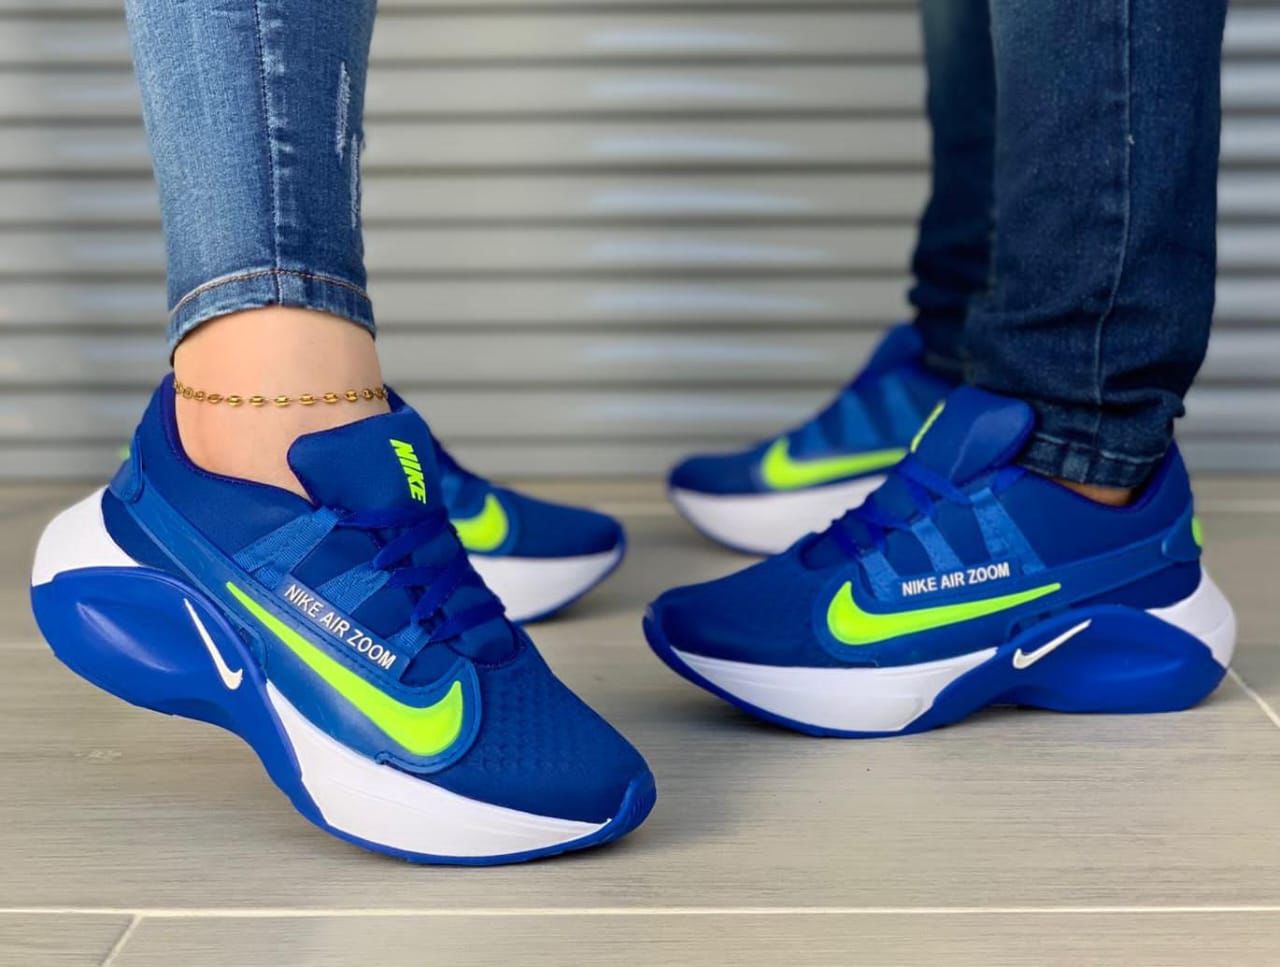 👟 ¡Destaca con estilo en cada paso con los nuevos Tenis Nike Azul! 👟